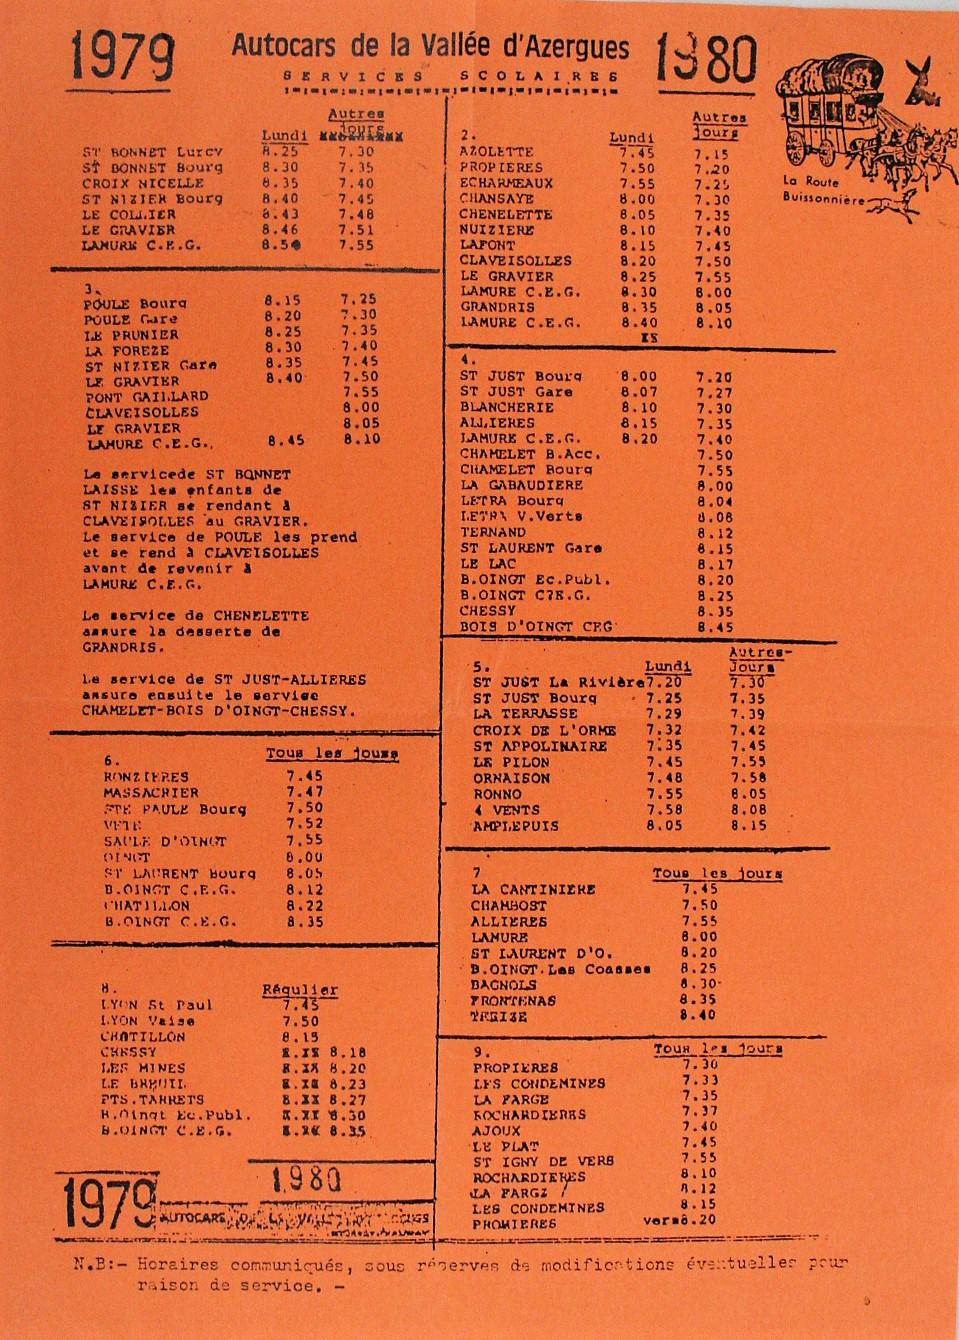 schools services 1979-1980